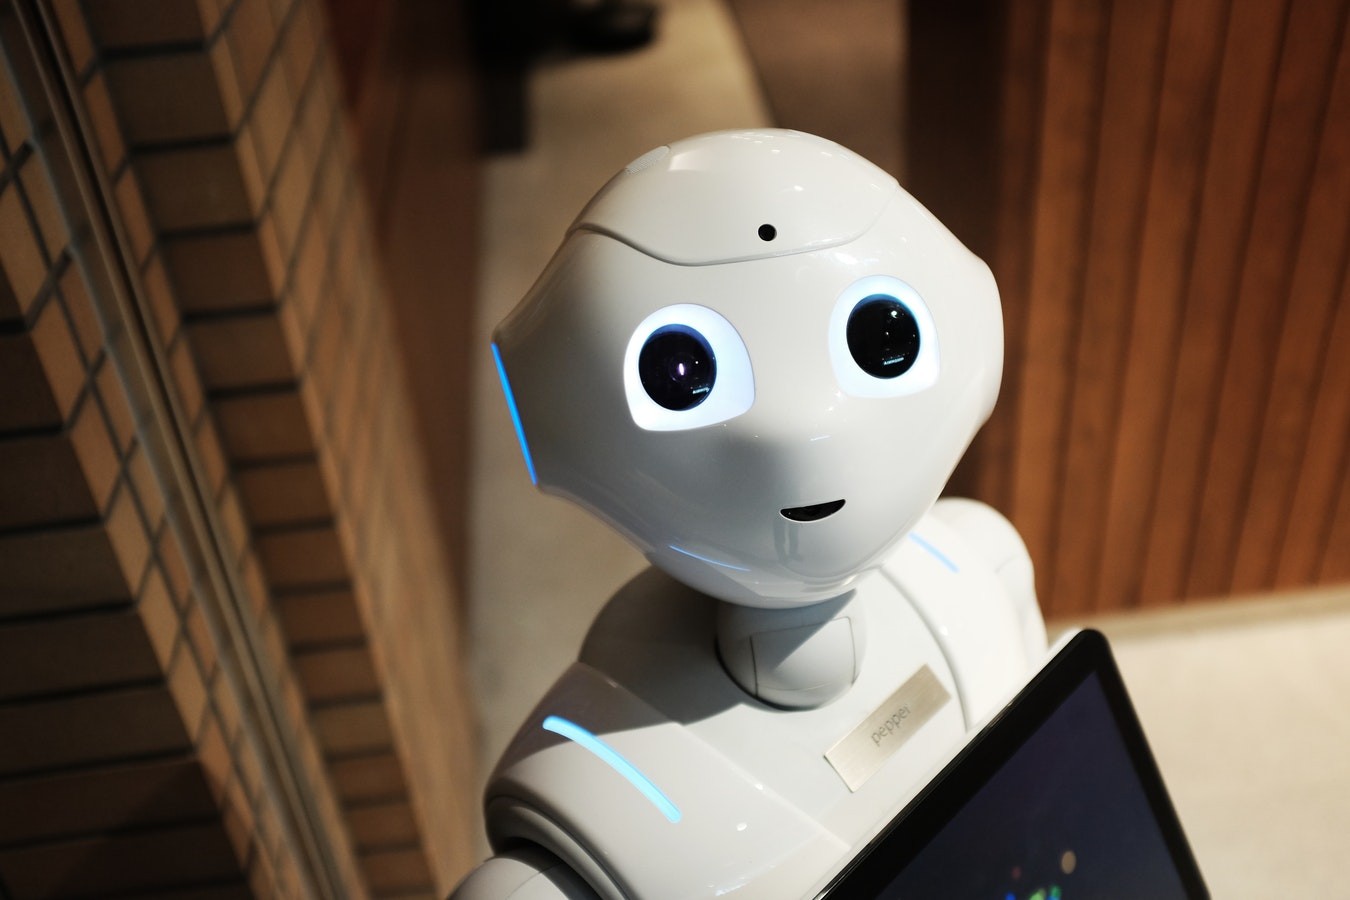 家用机器人:国内外主要玩家及未来方向分析 - OFweek智能家居网